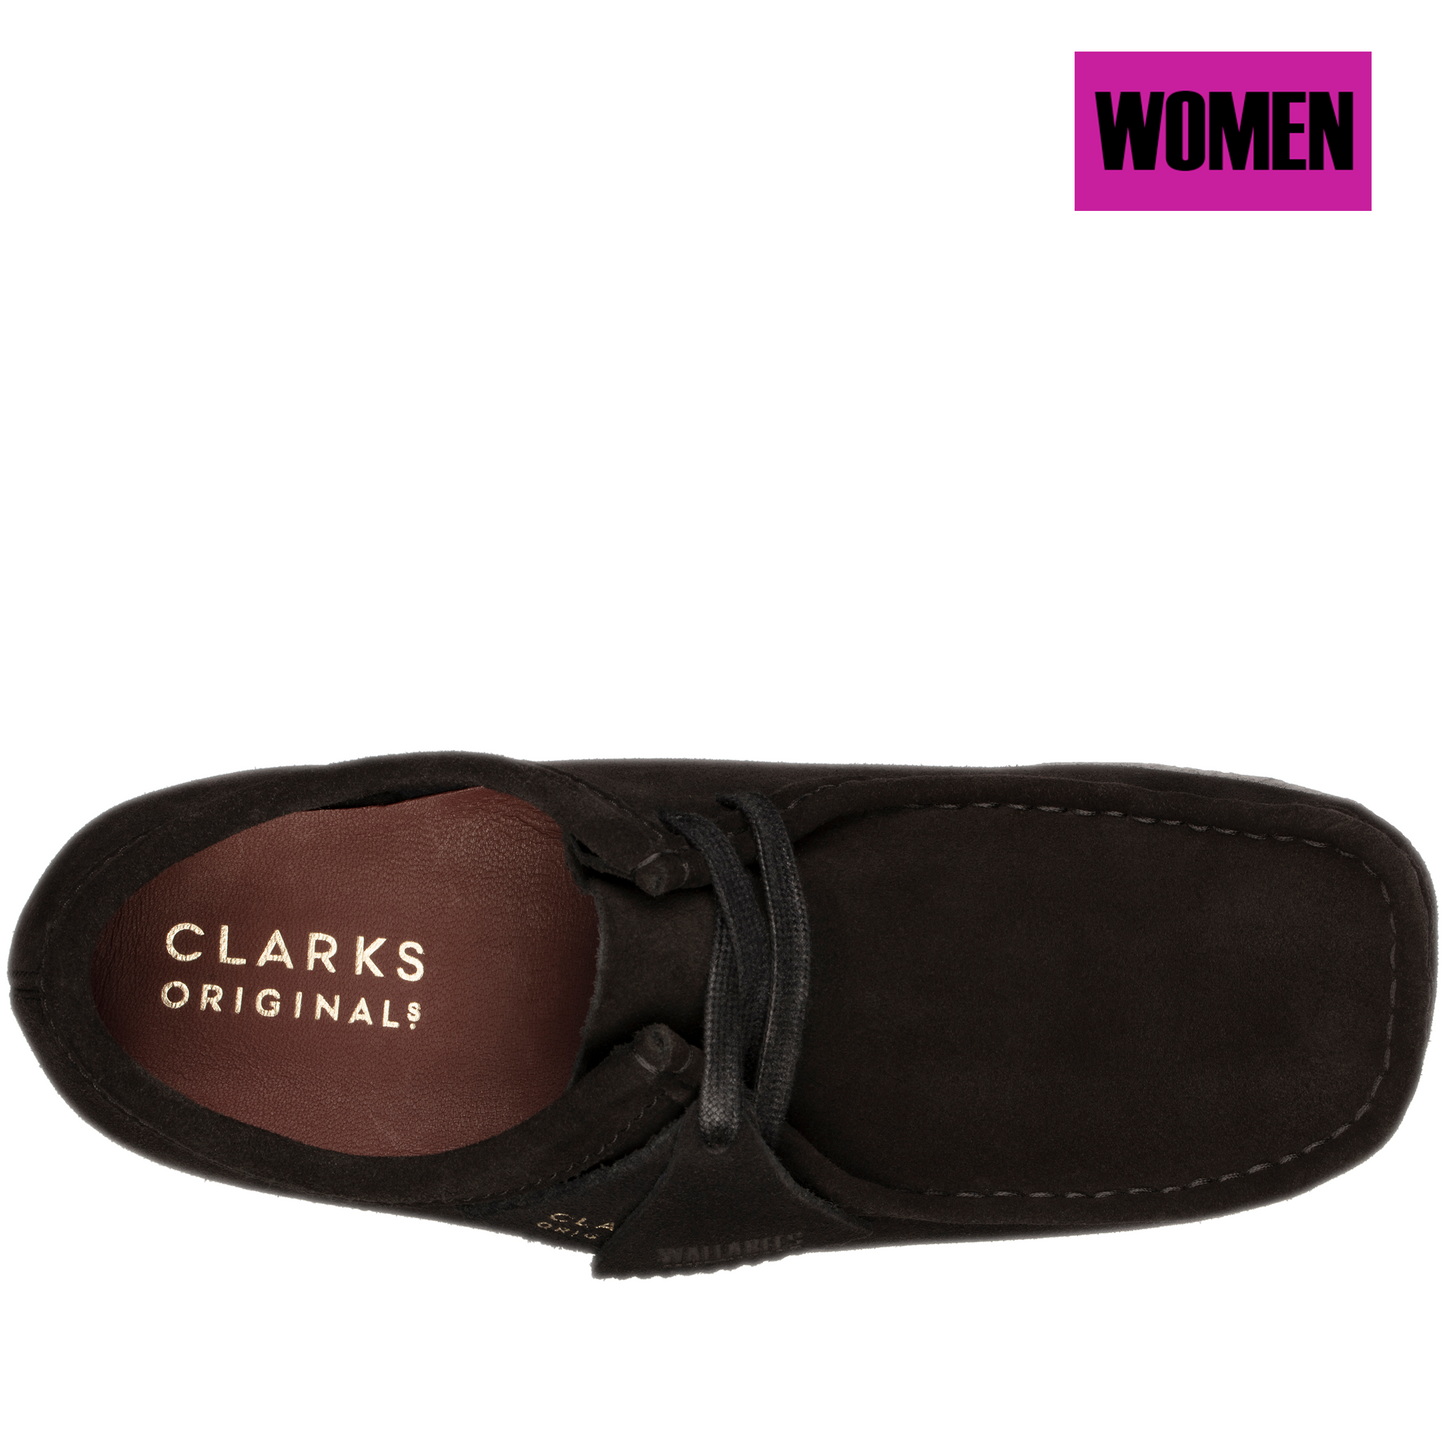 Women's Clarks Wallabee - Black Suede